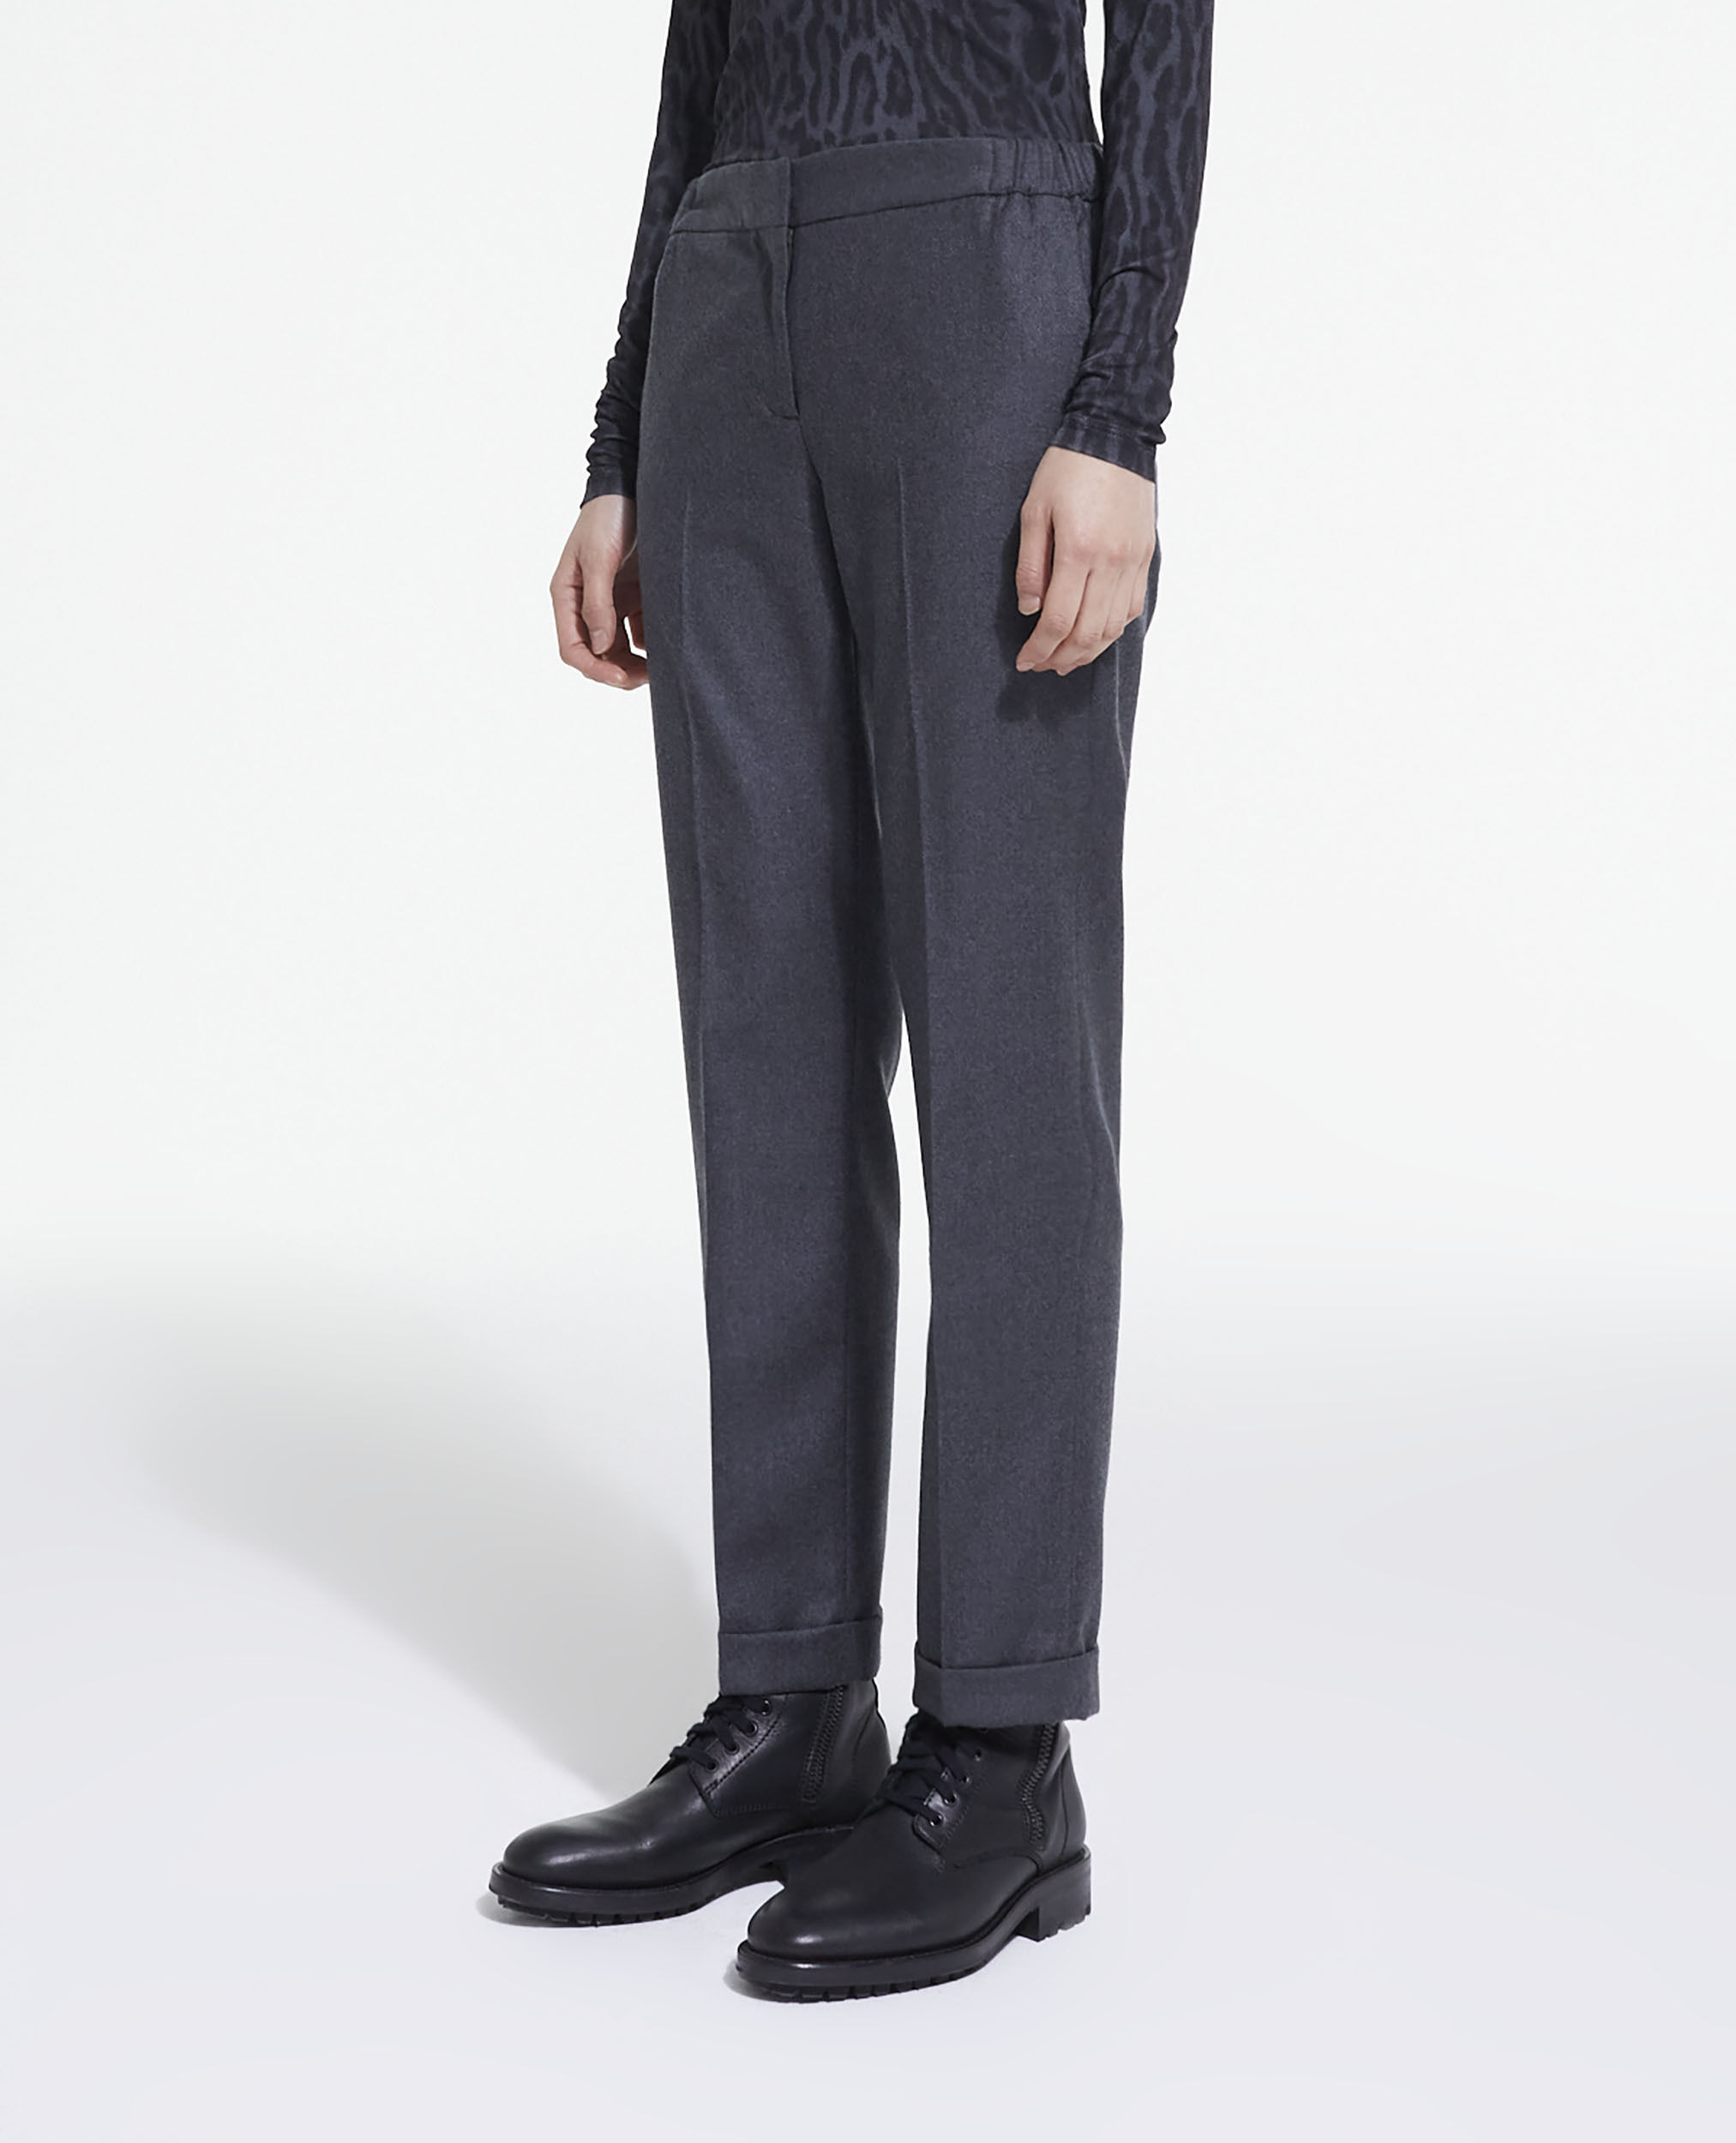 Windsor Pantalon en laine gris clair mouchet\u00e9 style d\u00e9contract\u00e9 Mode Pantalons Pantalons en laine 